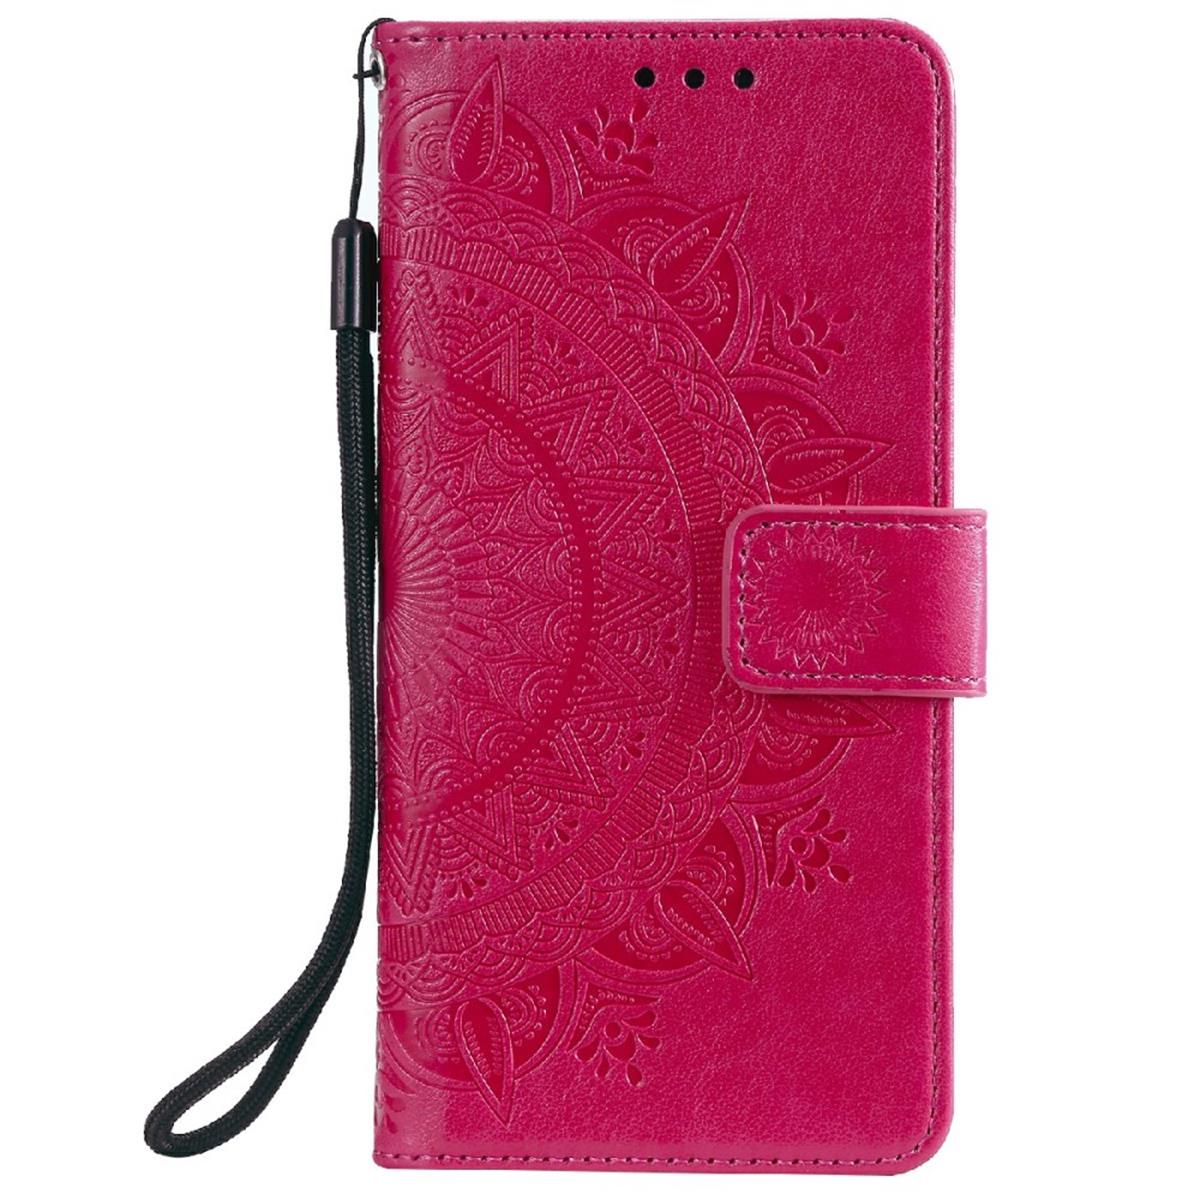 Hülle für Samsung Galaxy A03s Handy Tasche Flip Case Cover Etui Mandala Pink